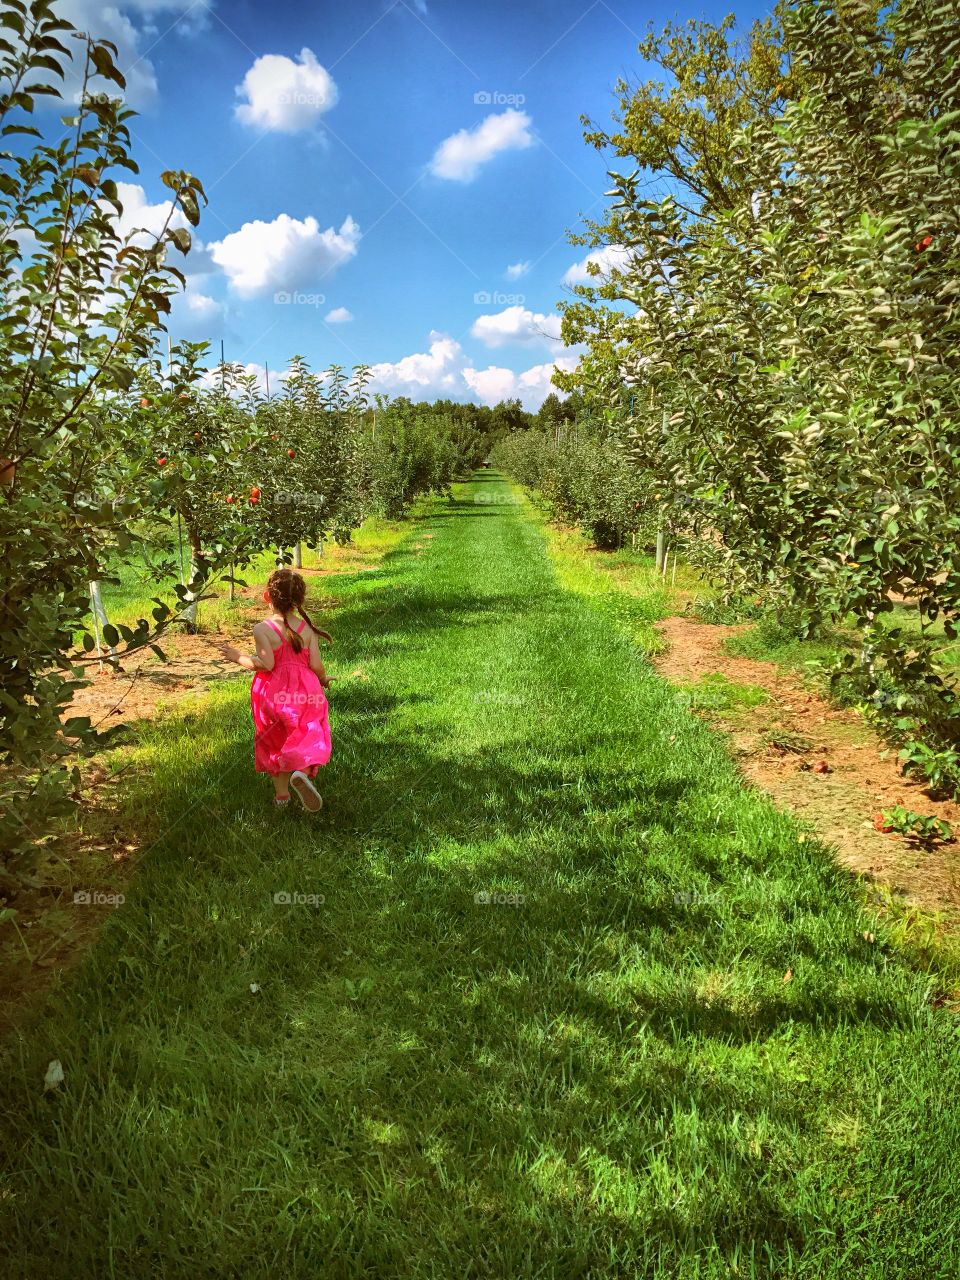 Little girl in a pink dress running through an apple orchard